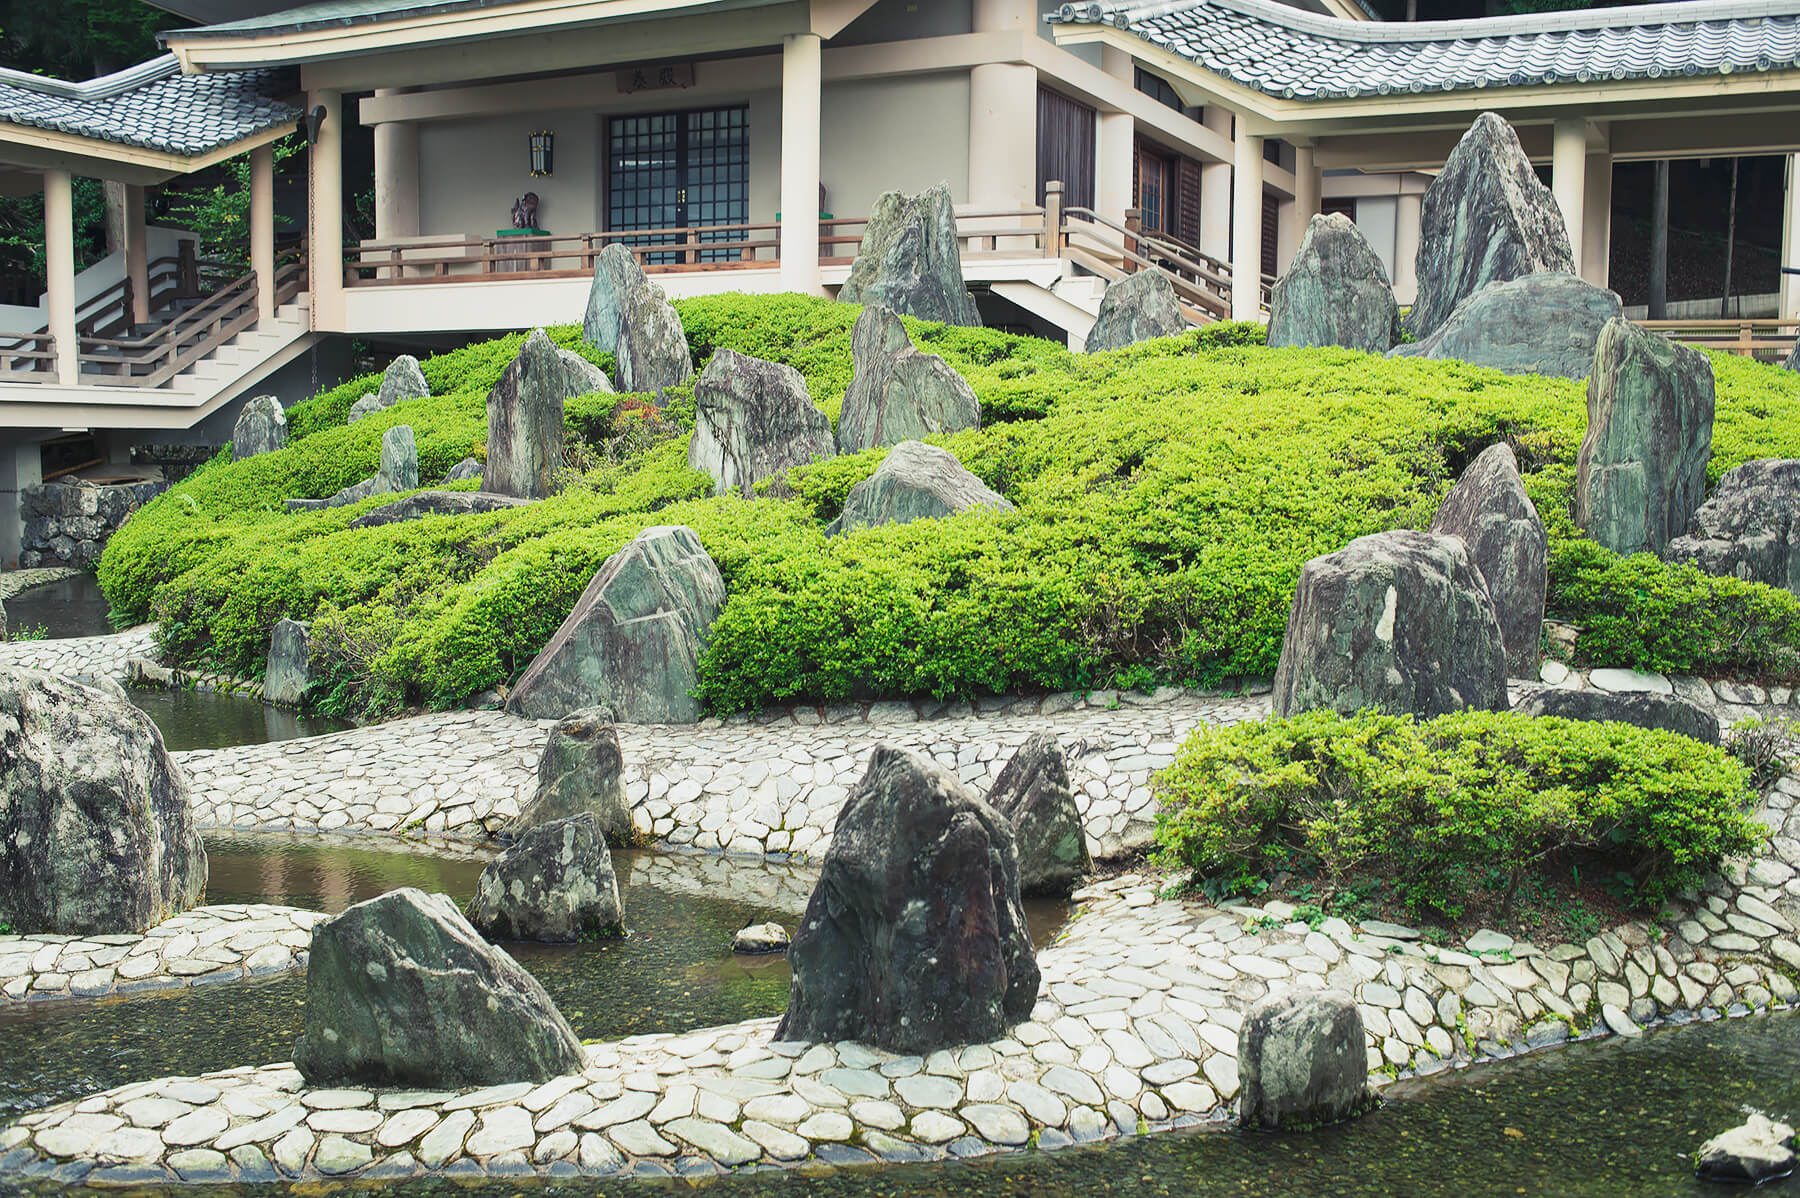 
          京都「松尾大社」の庭園写真1
      